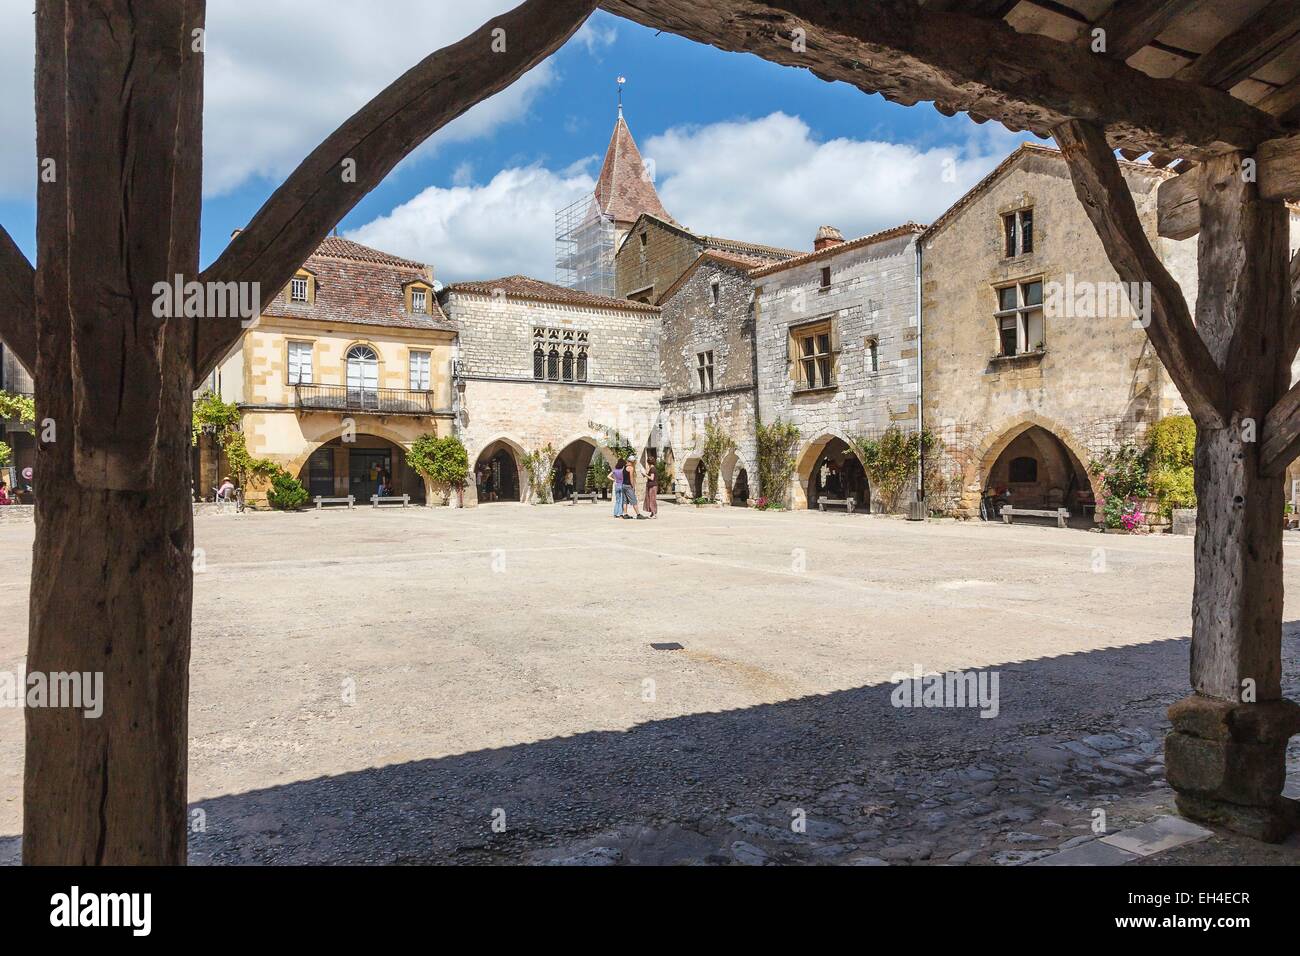 Frankreich, Dordogne, Monpazier, beschriftete Les Plus Beaux Dörfer de France (die schönsten Dörfer Frankreichs), der ummauerten Stadt quadratisch Stockfoto